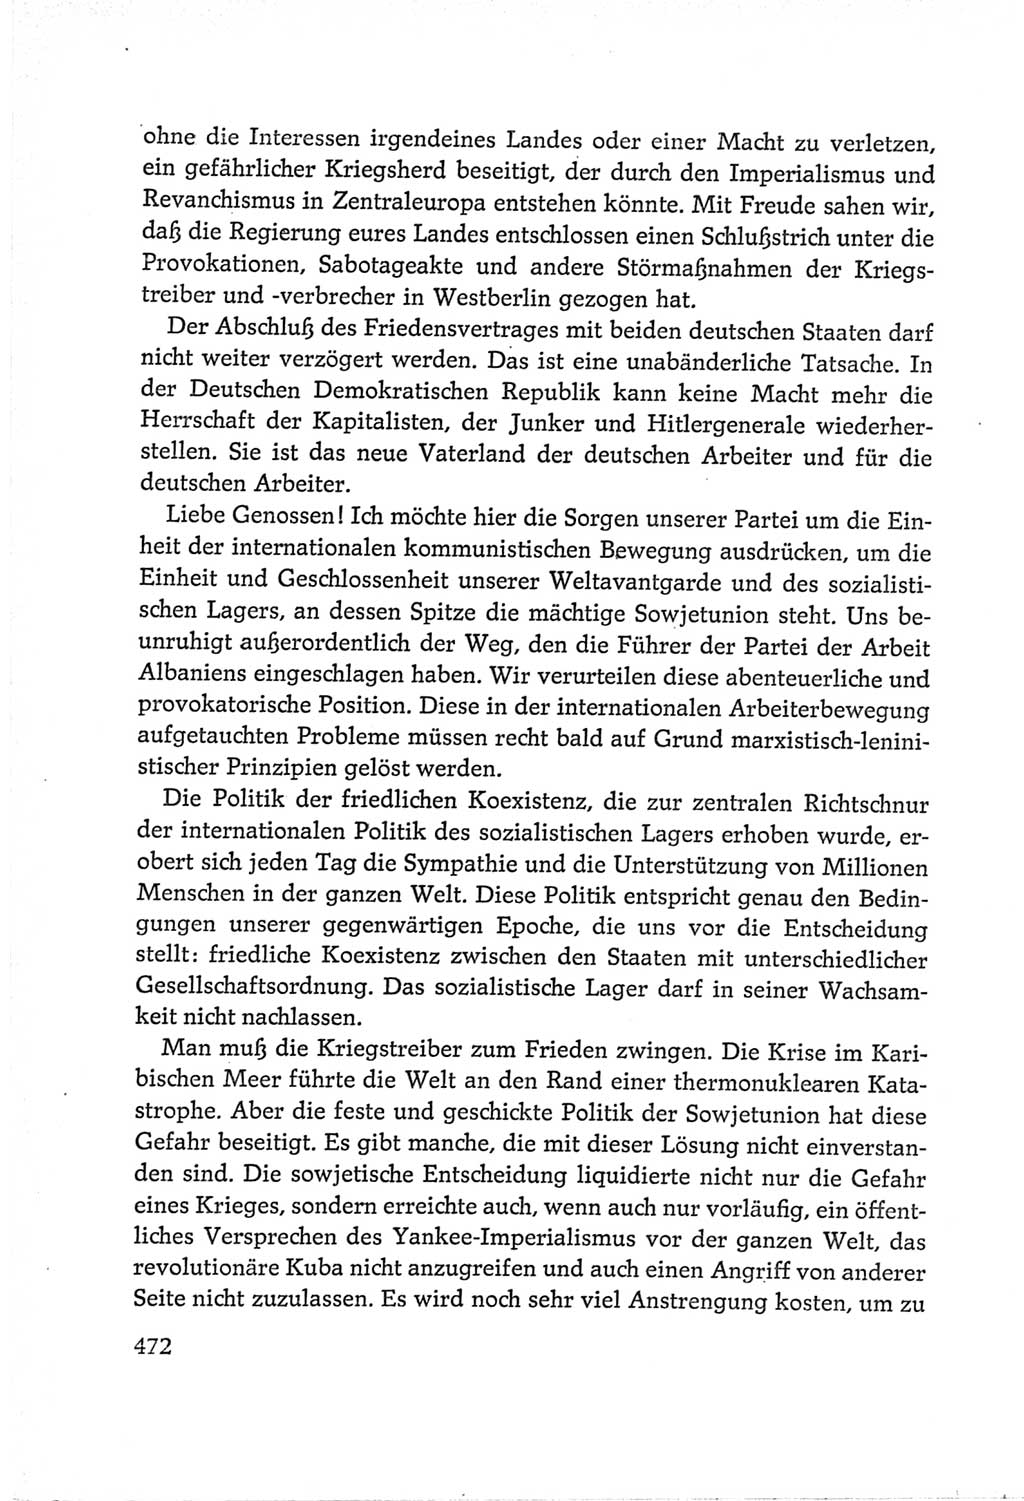 Protokoll der Verhandlungen des Ⅵ. Parteitages der Sozialistischen Einheitspartei Deutschlands (SED) [Deutsche Demokratische Republik (DDR)] 1963, Band Ⅱ, Seite 472 (Prot. Verh. Ⅵ. PT SED DDR 1963, Bd. Ⅱ, S. 472)